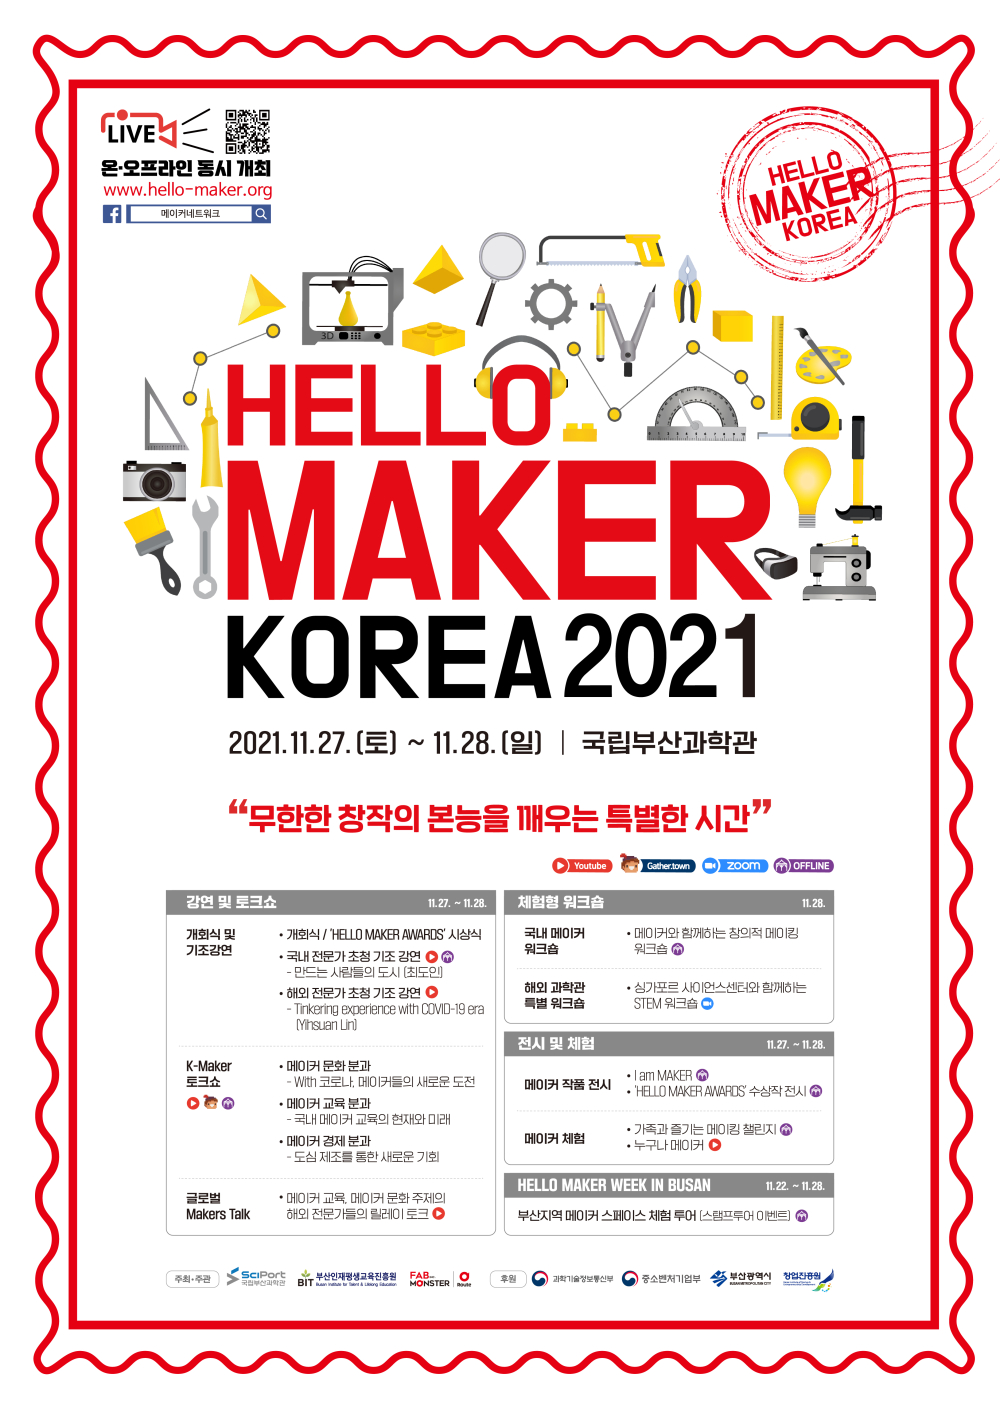 HELLO MAKER KOREA 2021